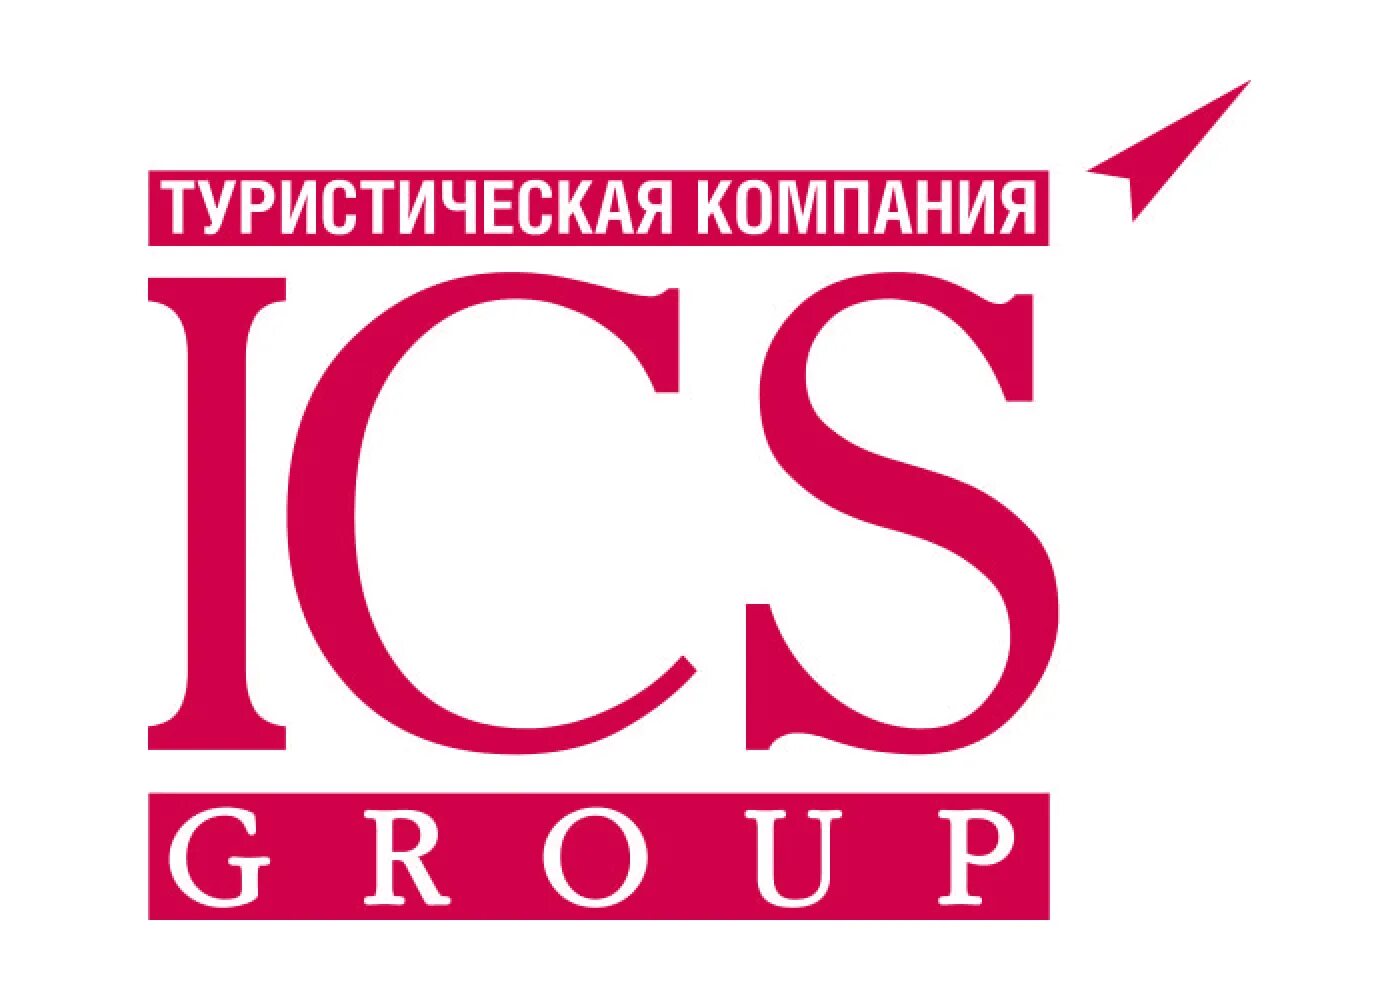 Ай си эс сайт. ICS туроператор. Туроператор ICS Travel. ICS Travel Group. ICS Travel Group лого.